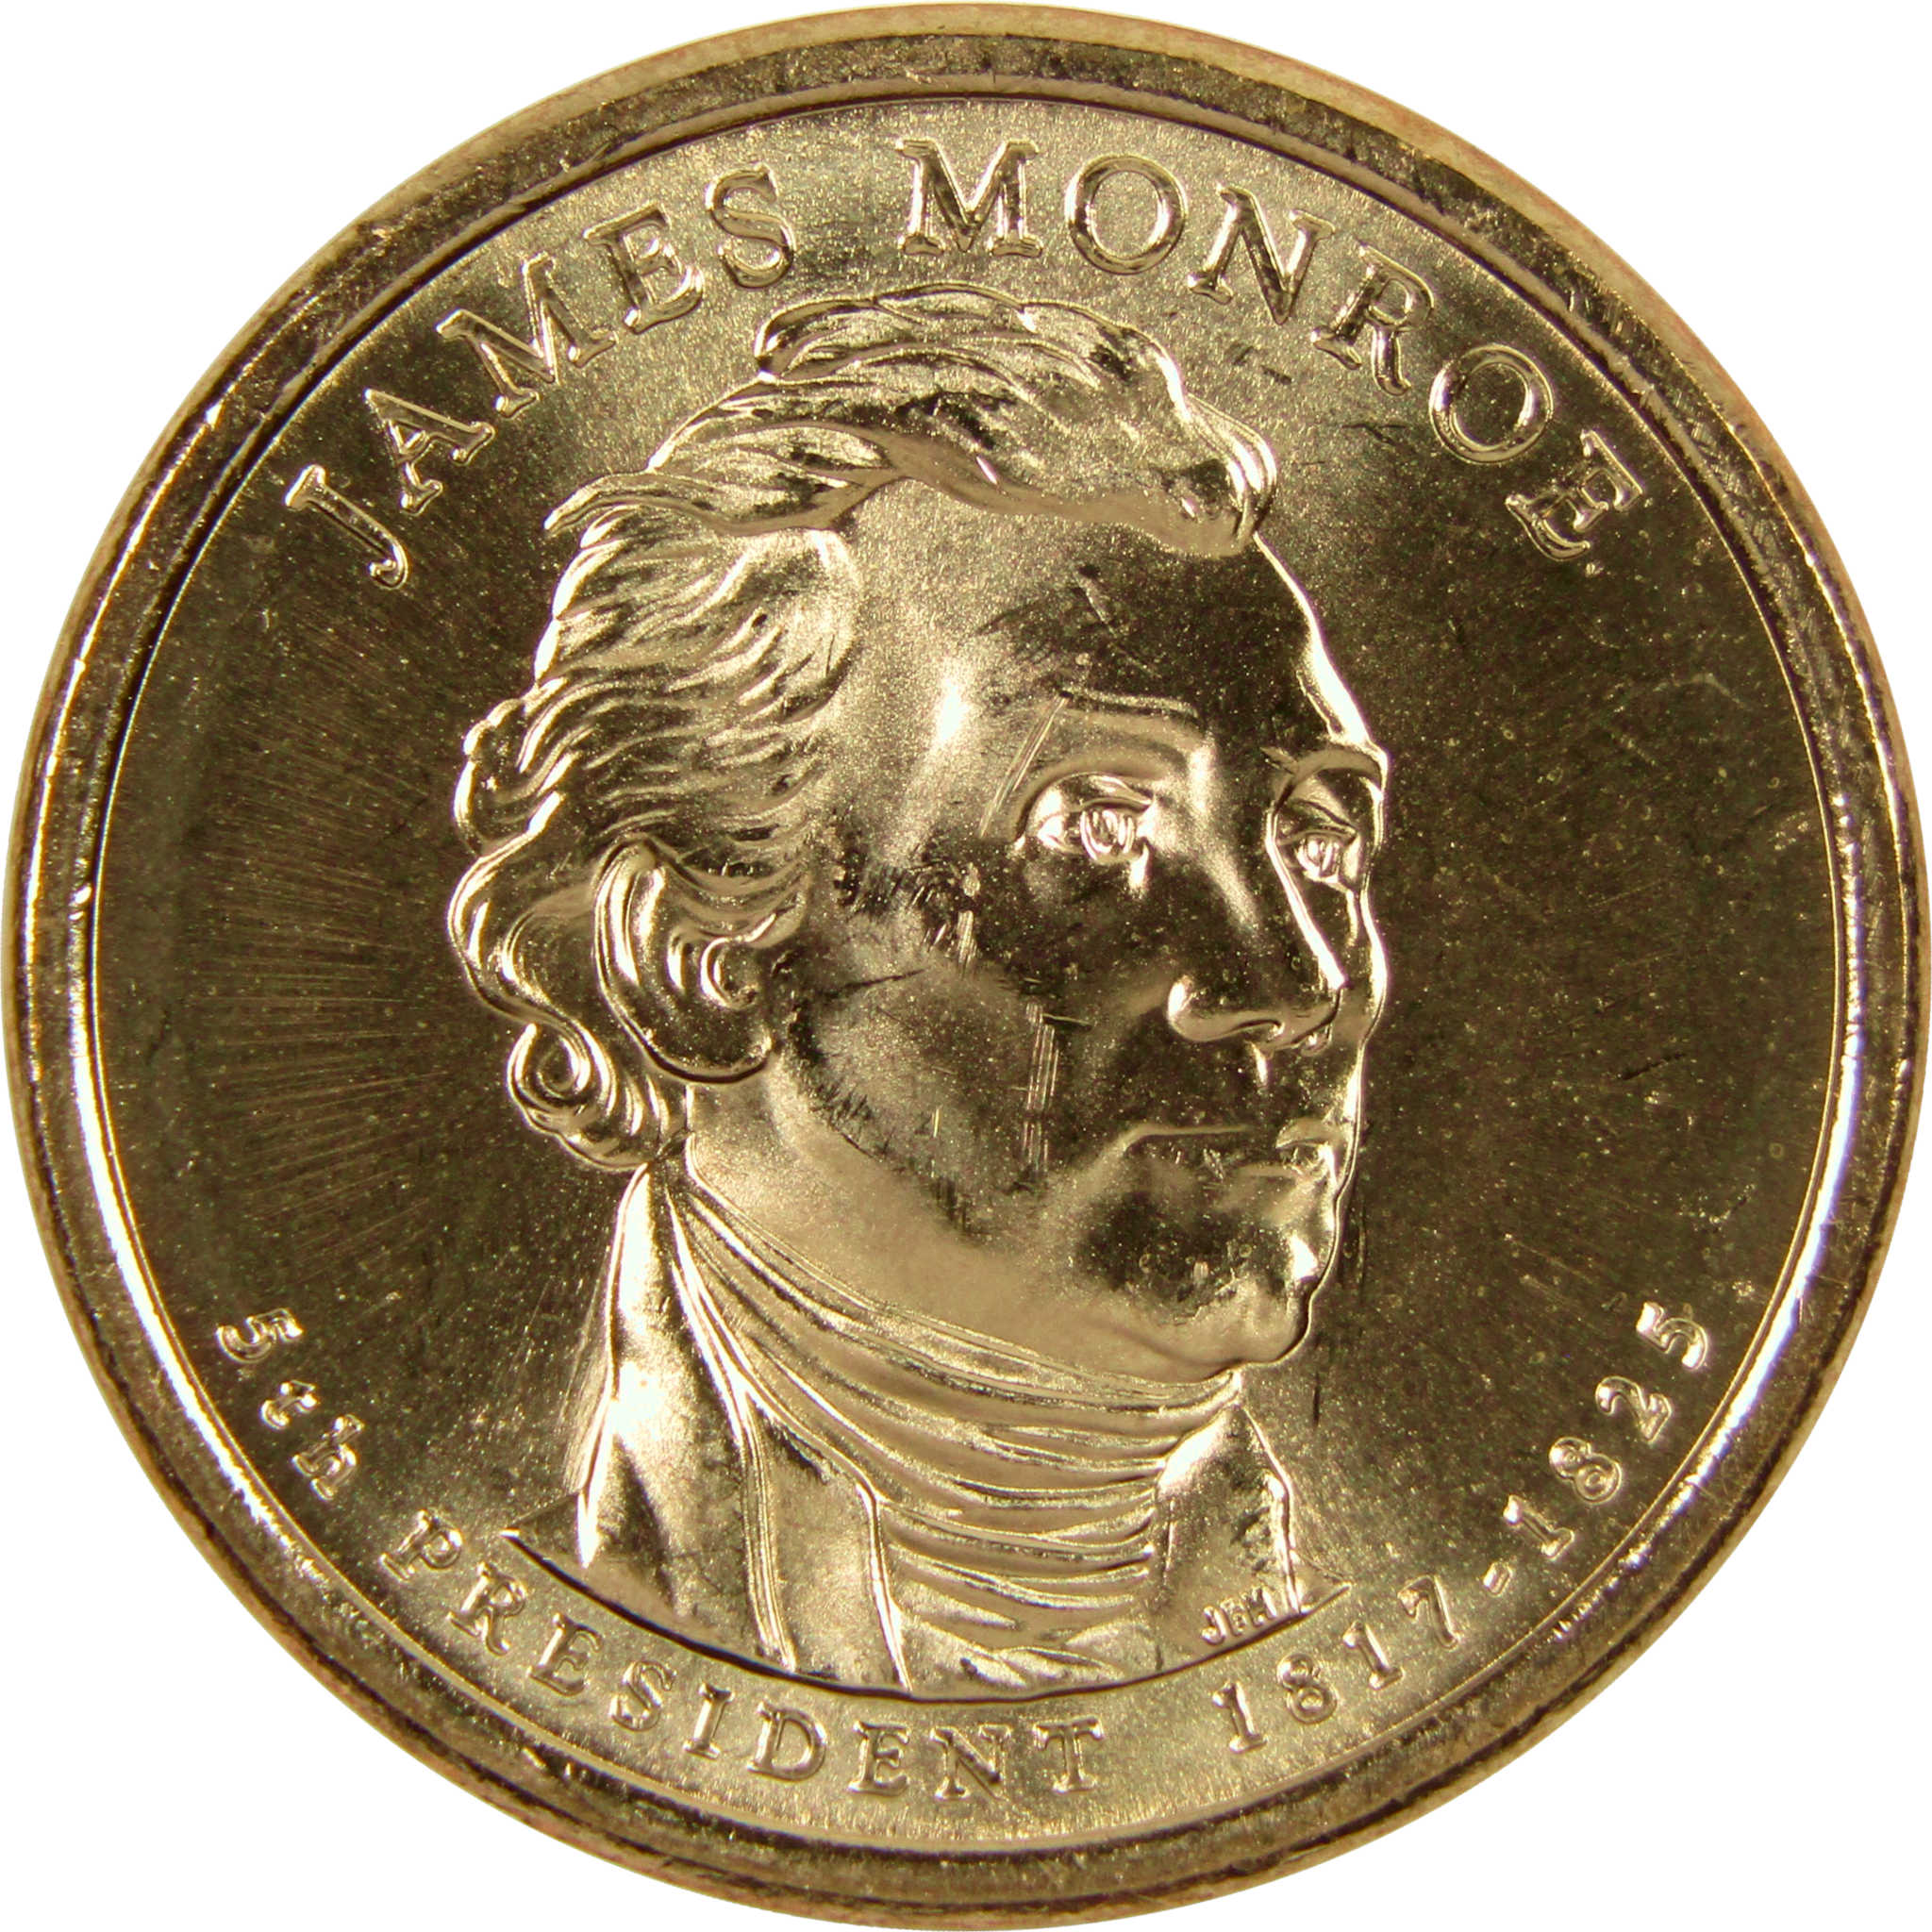 2008 P James Monroe Presidential Dollar BU Uncirculated $1 Coin